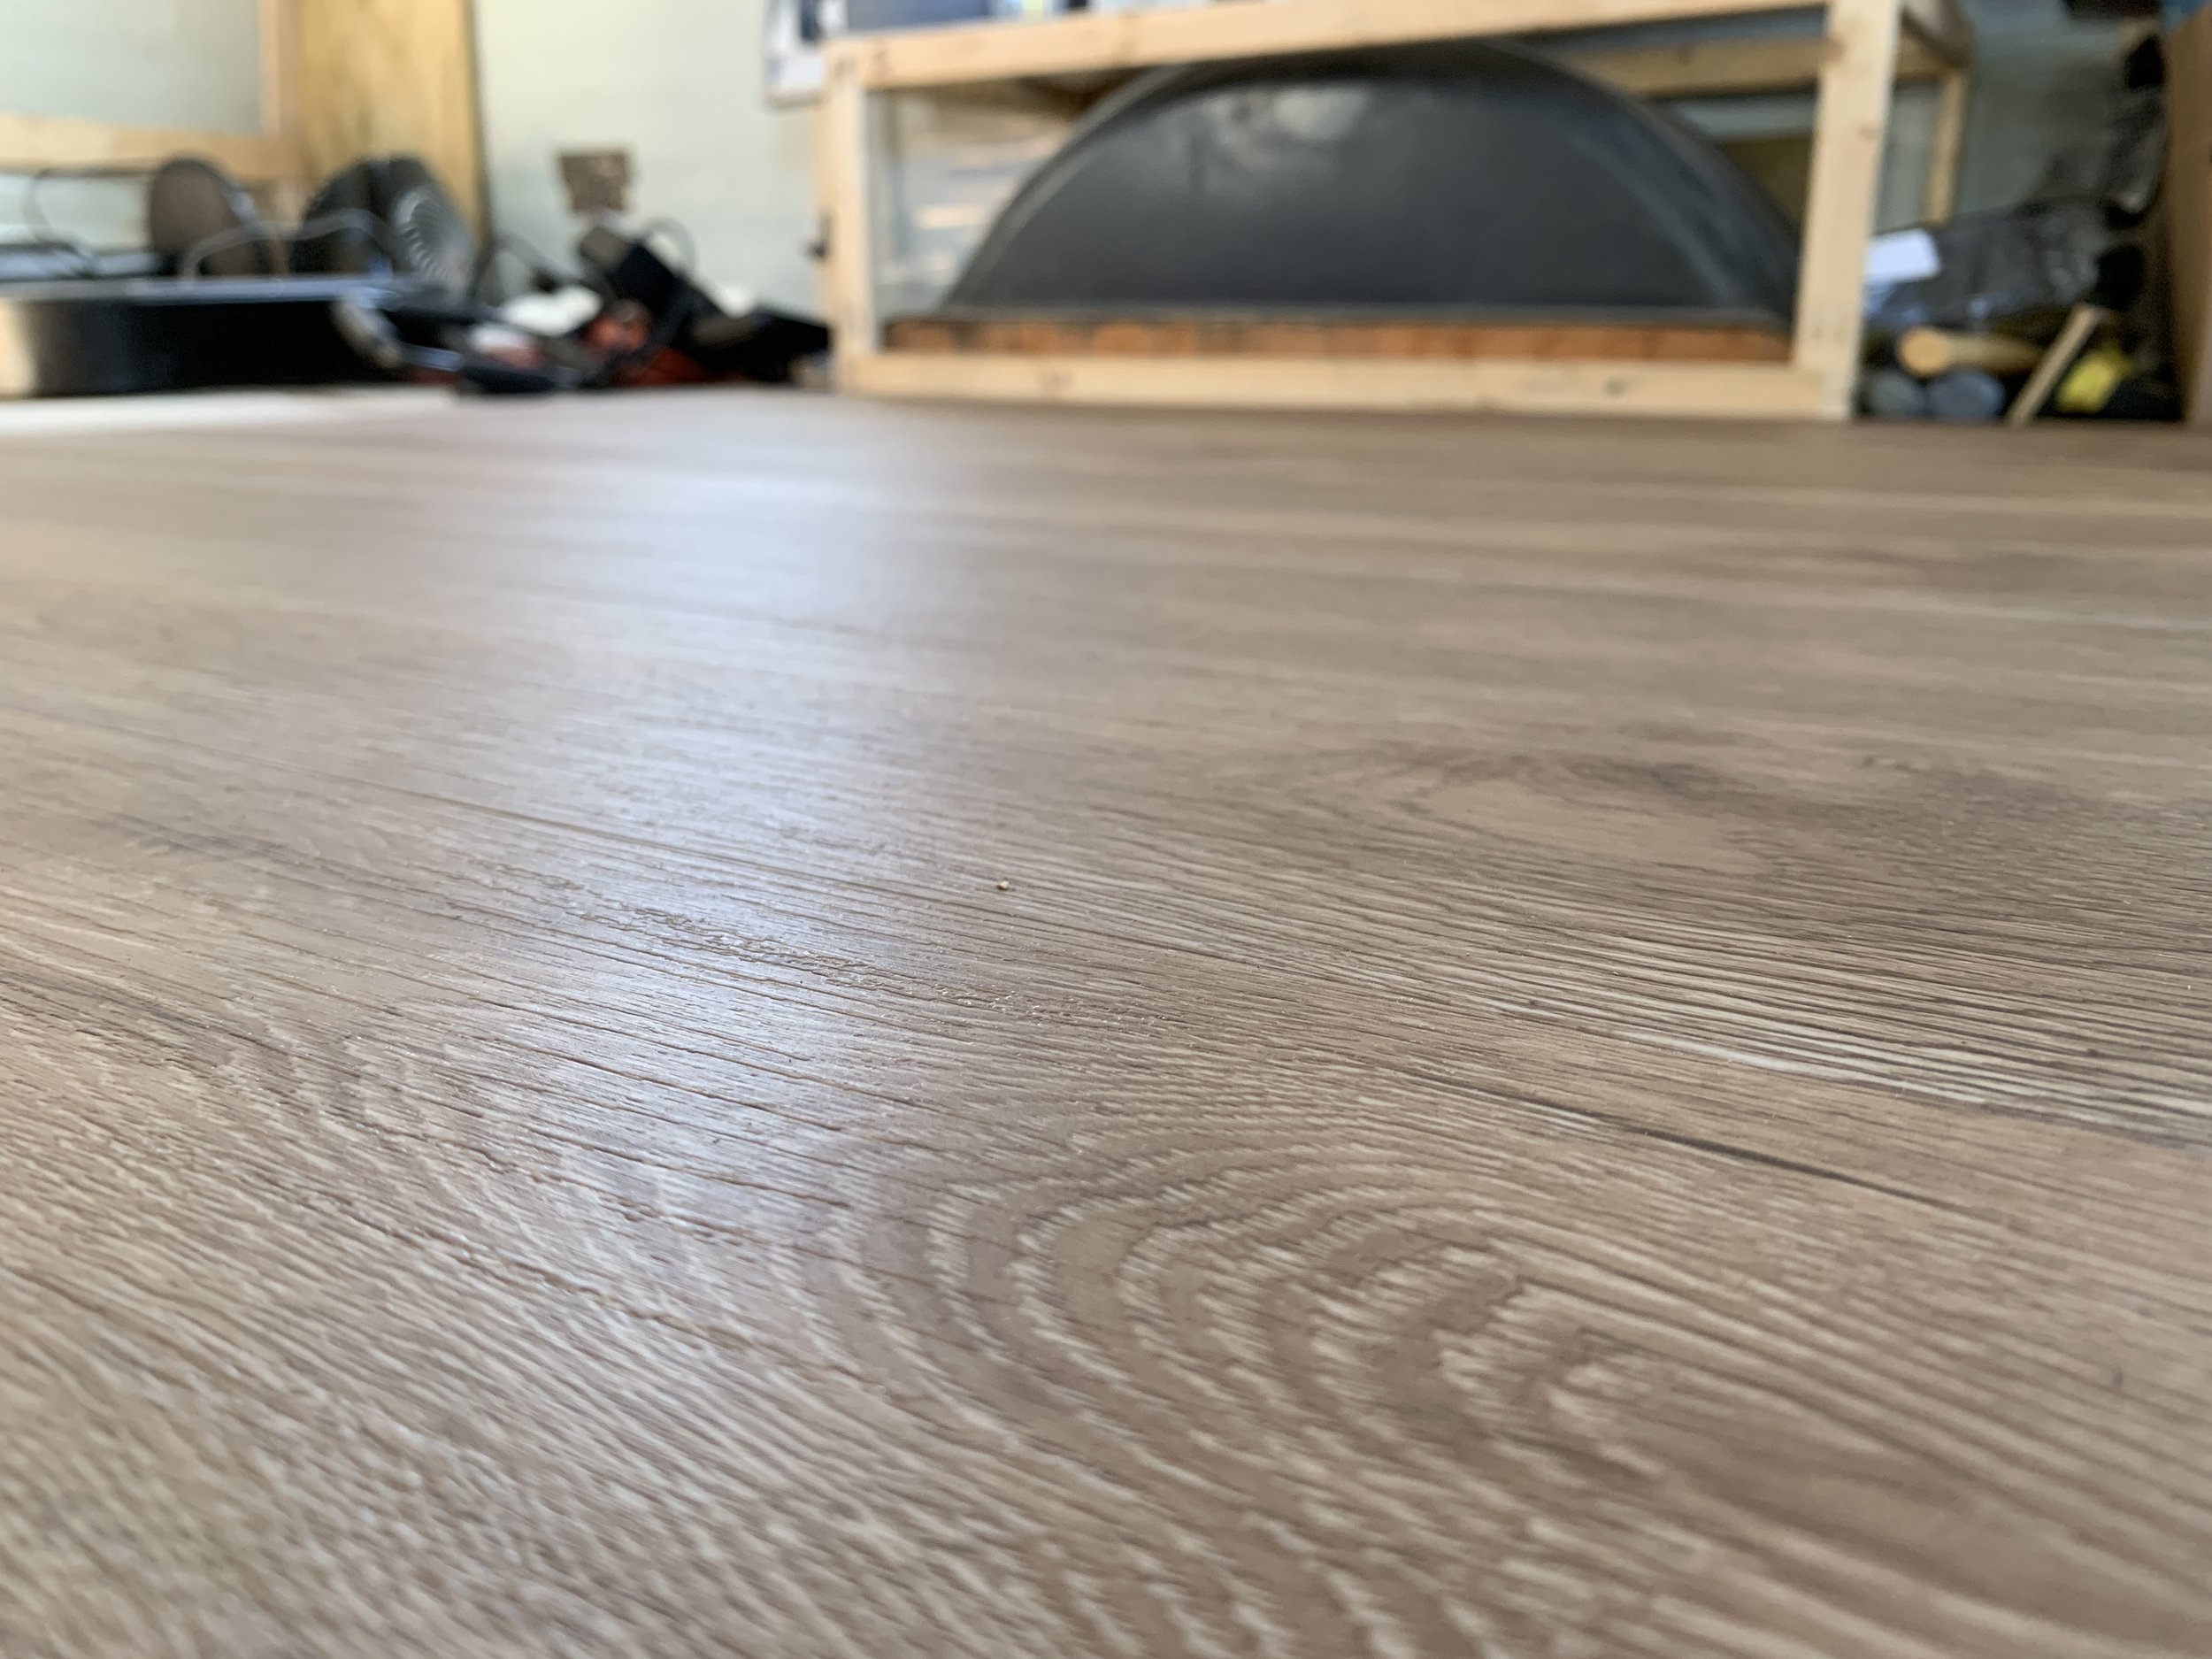 Installed Vinyl Plank Flooring, Liquid Nails For Vinyl Flooring